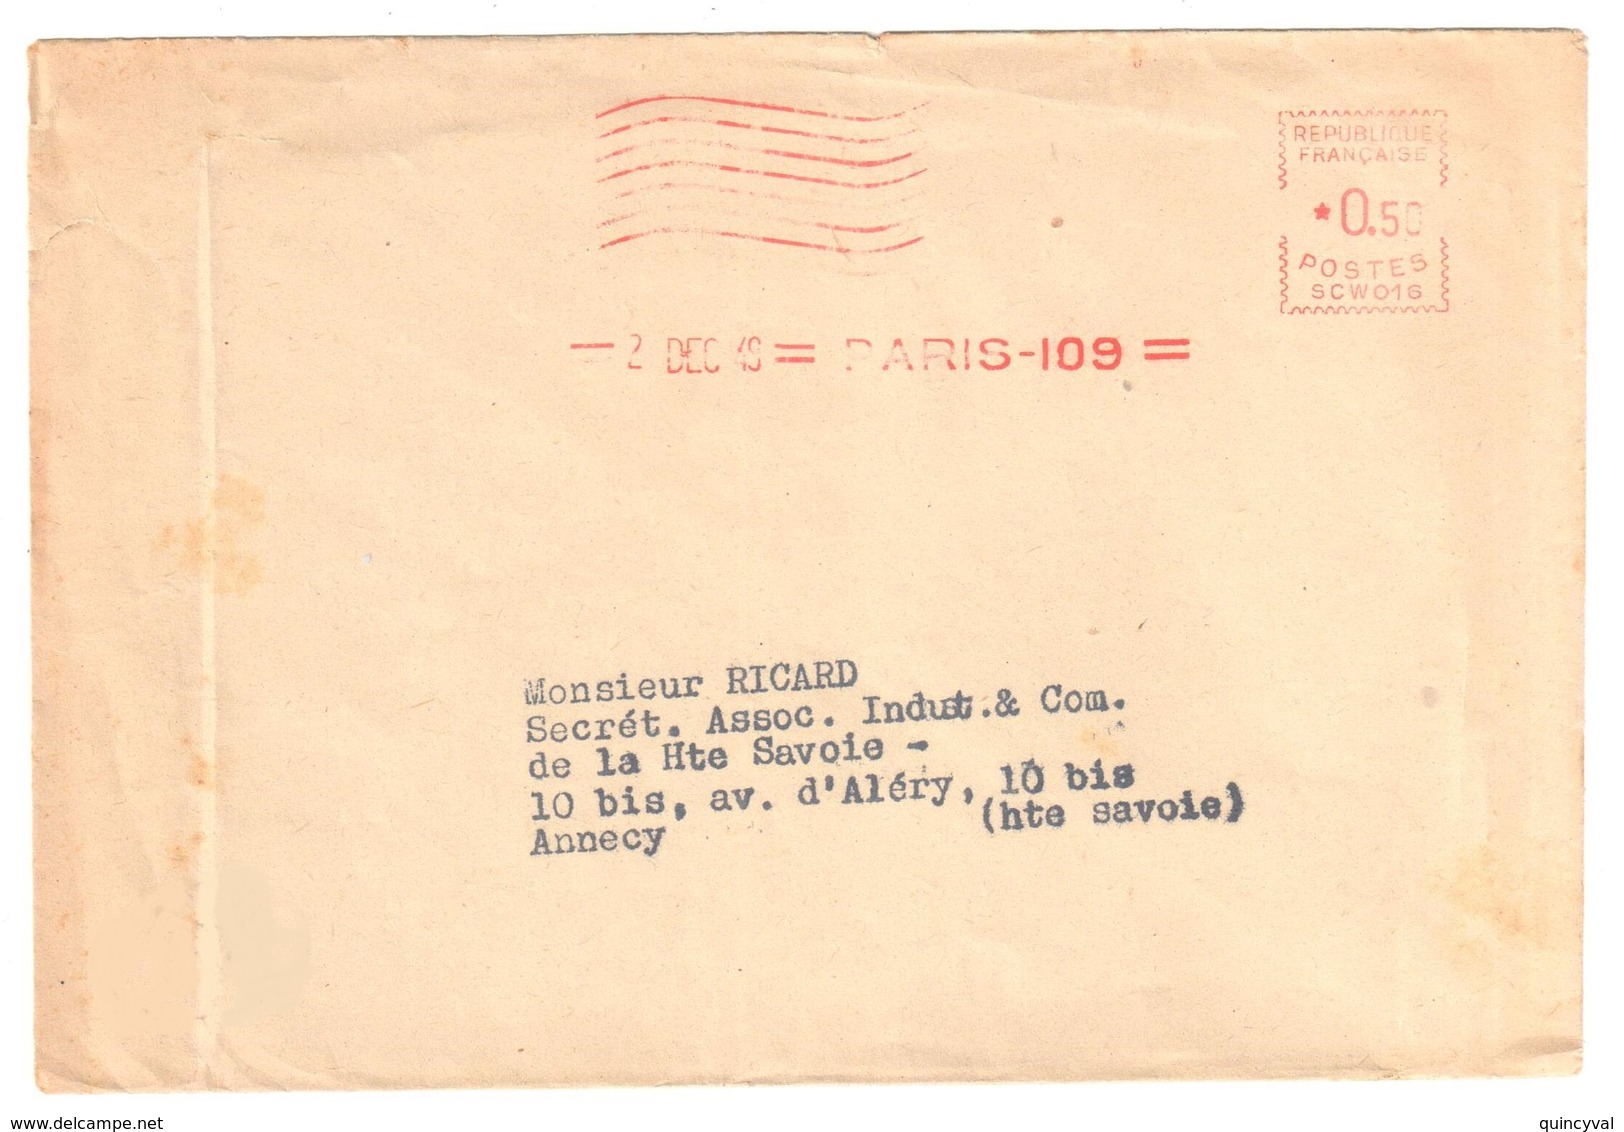 PARIS 109 Enveloppe Journal Sous Enveloppe 50c Ob 2 12 1949  EMA SCW016 - Freistempel